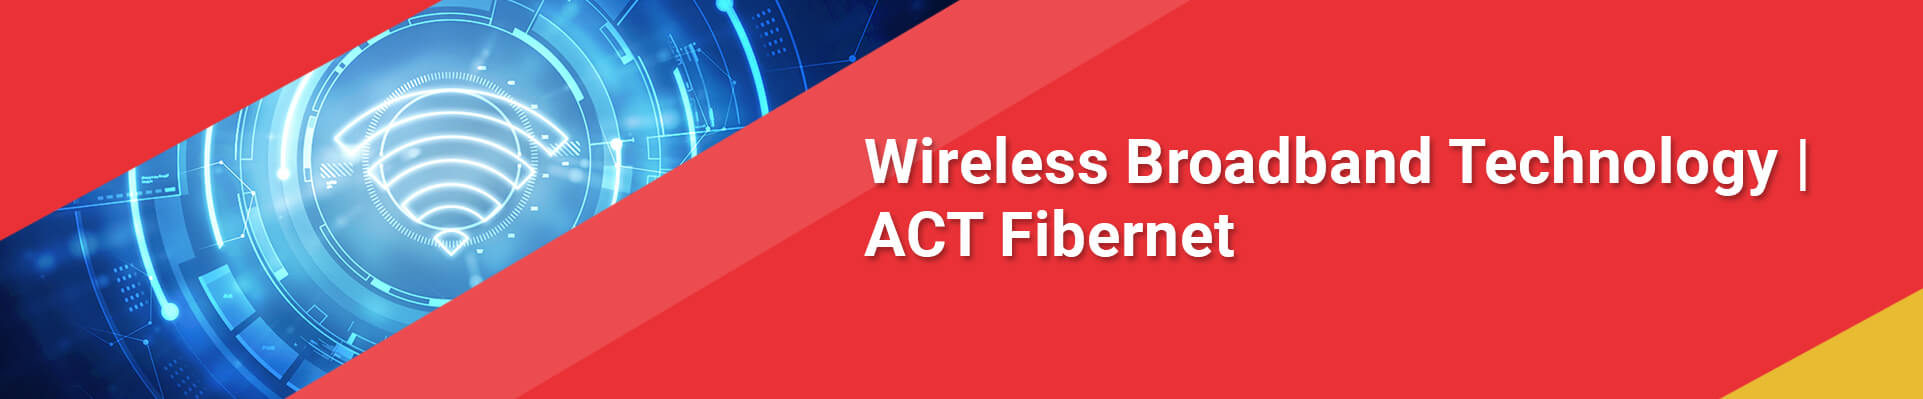 Wireless Broadband Technology